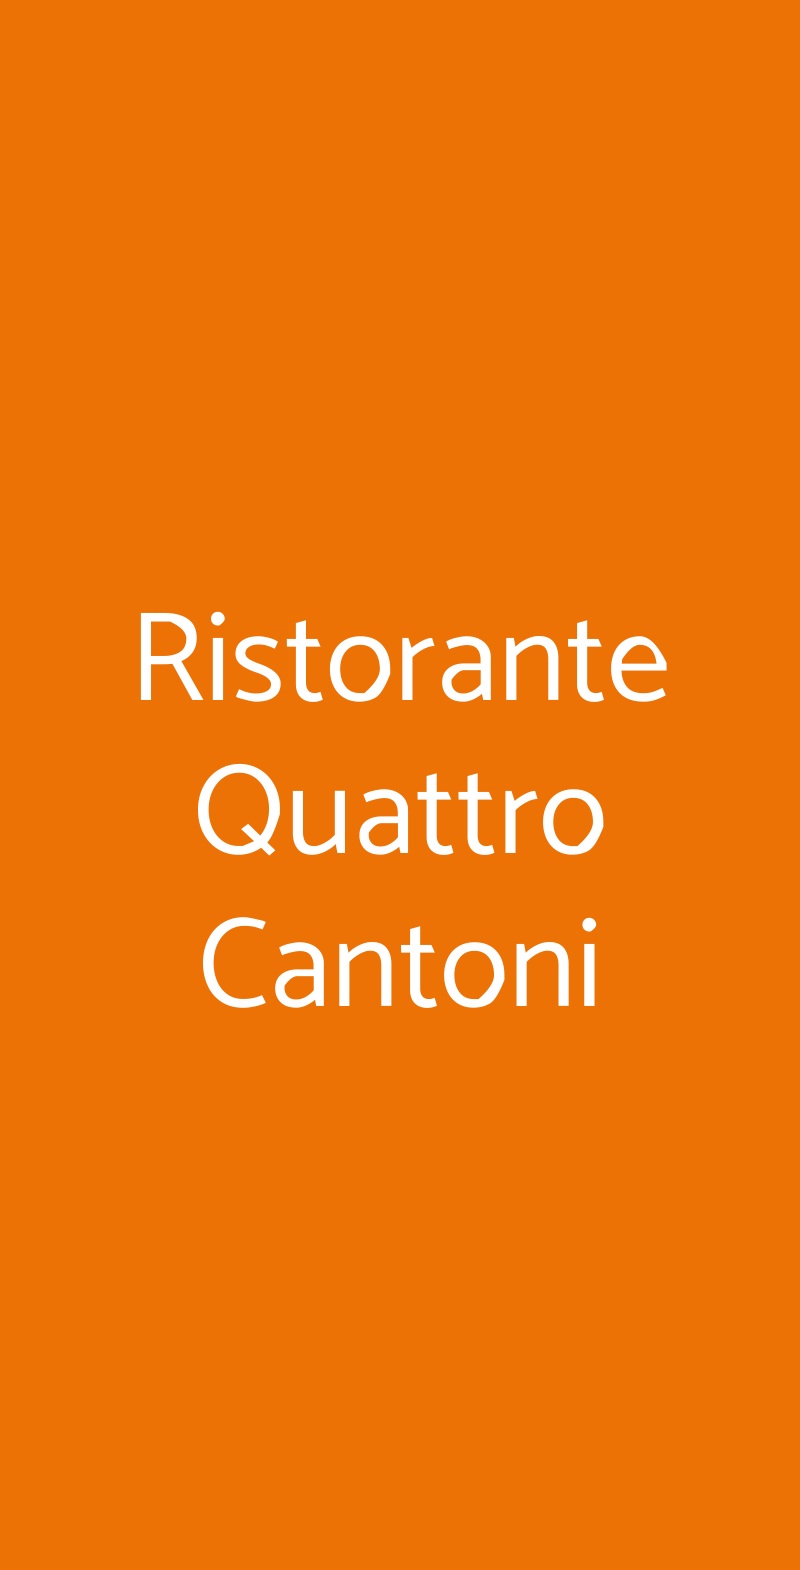 Ristorante Quattro Cantoni Siena menù 1 pagina